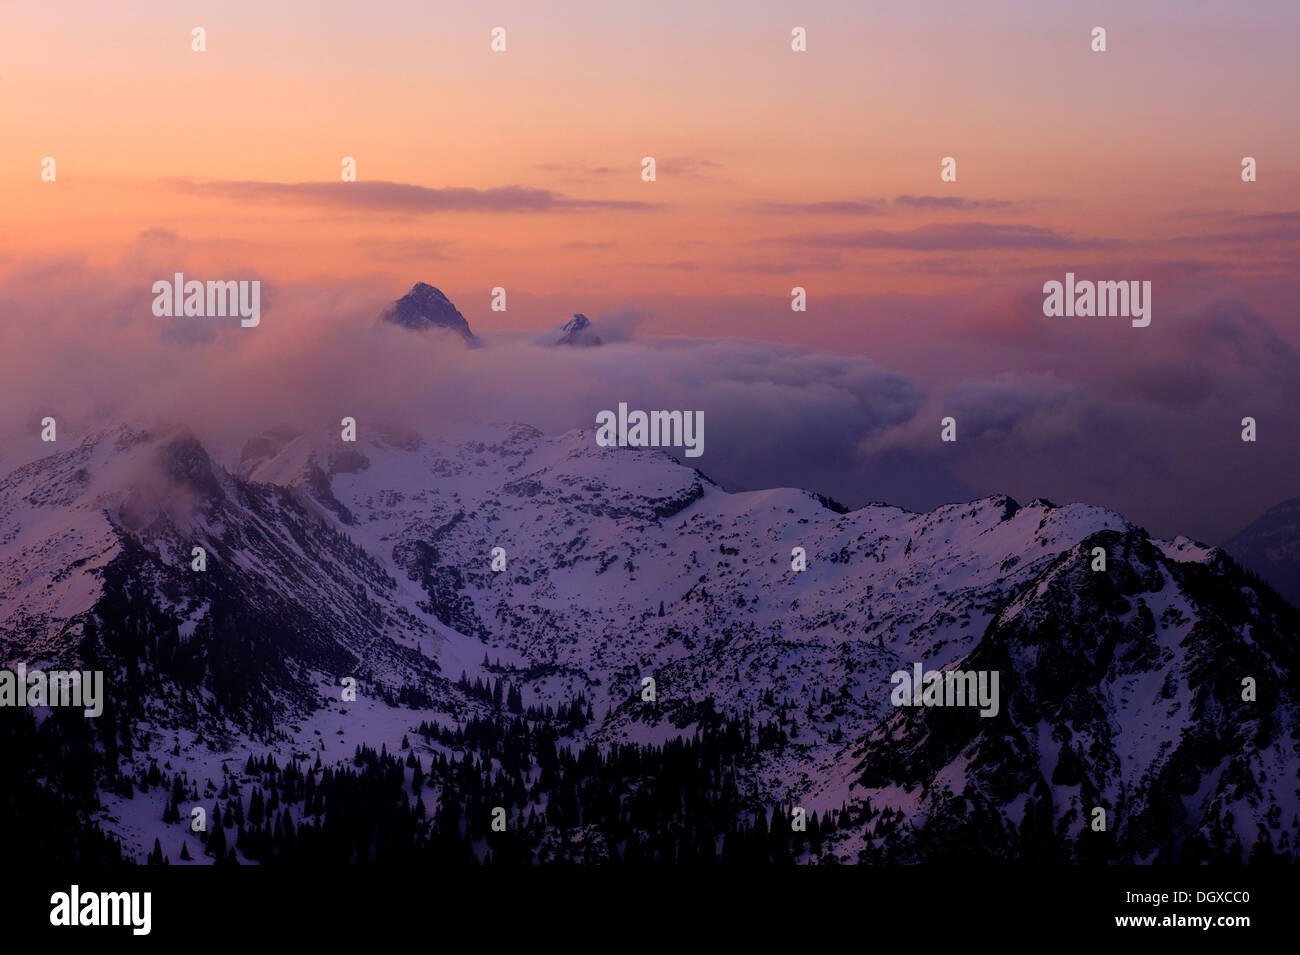 Des pics de montagne avec des nuages au lever du soleil, à l'aube, Graen, vallée Tannheimertal Ausserfern,, Tyrol, Autriche, Europe Banque D'Images